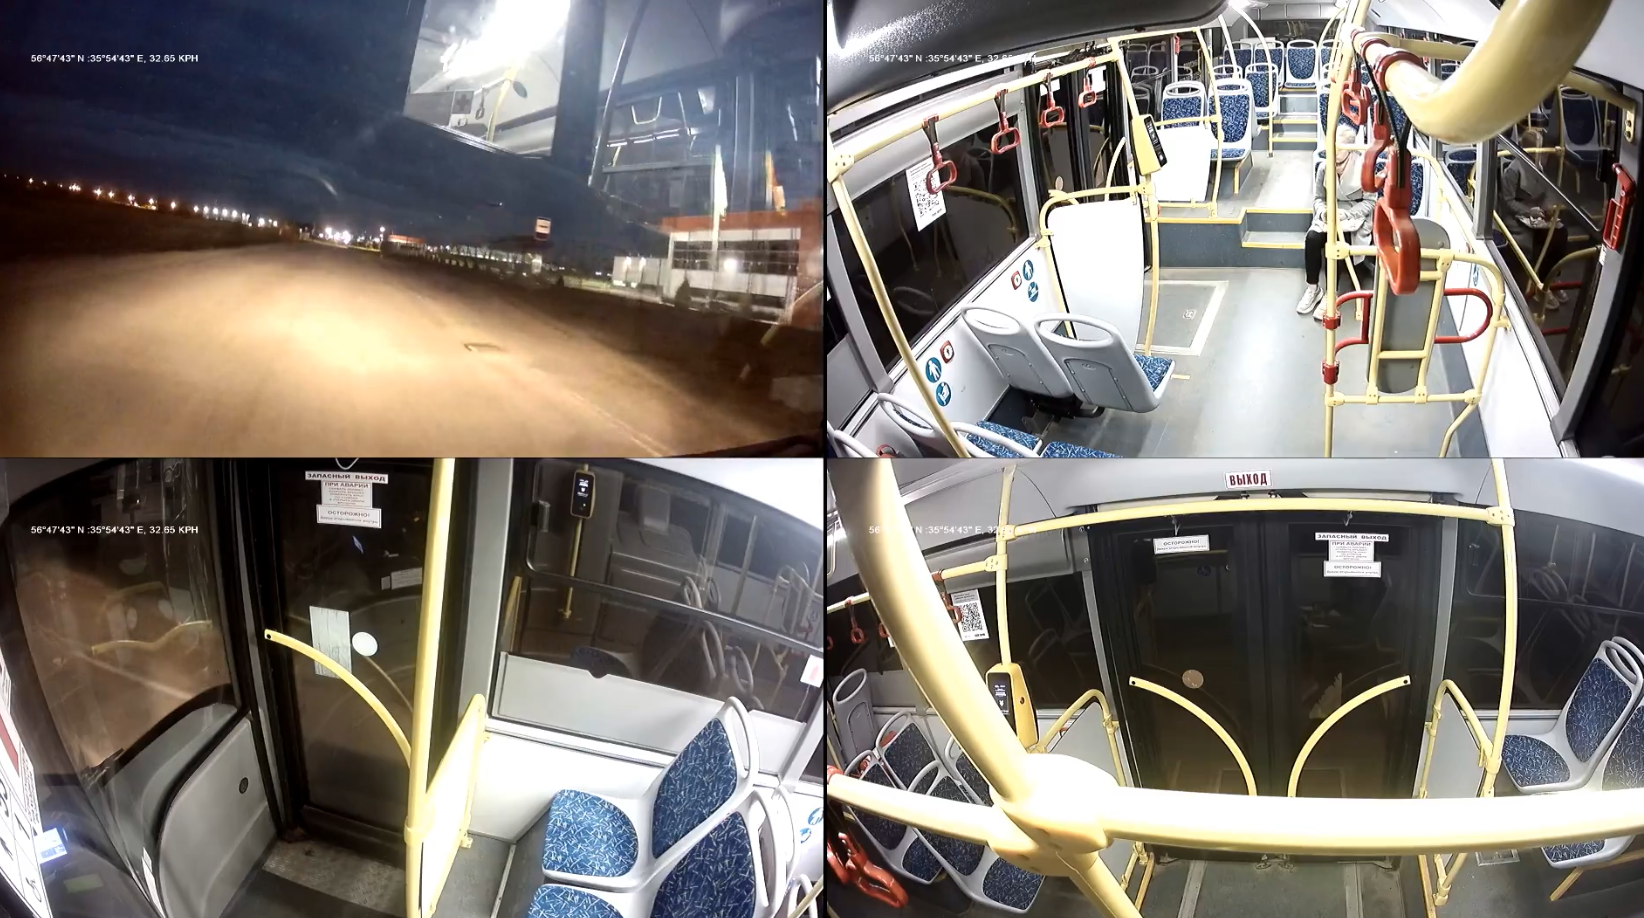 Камеры общественного транспорта